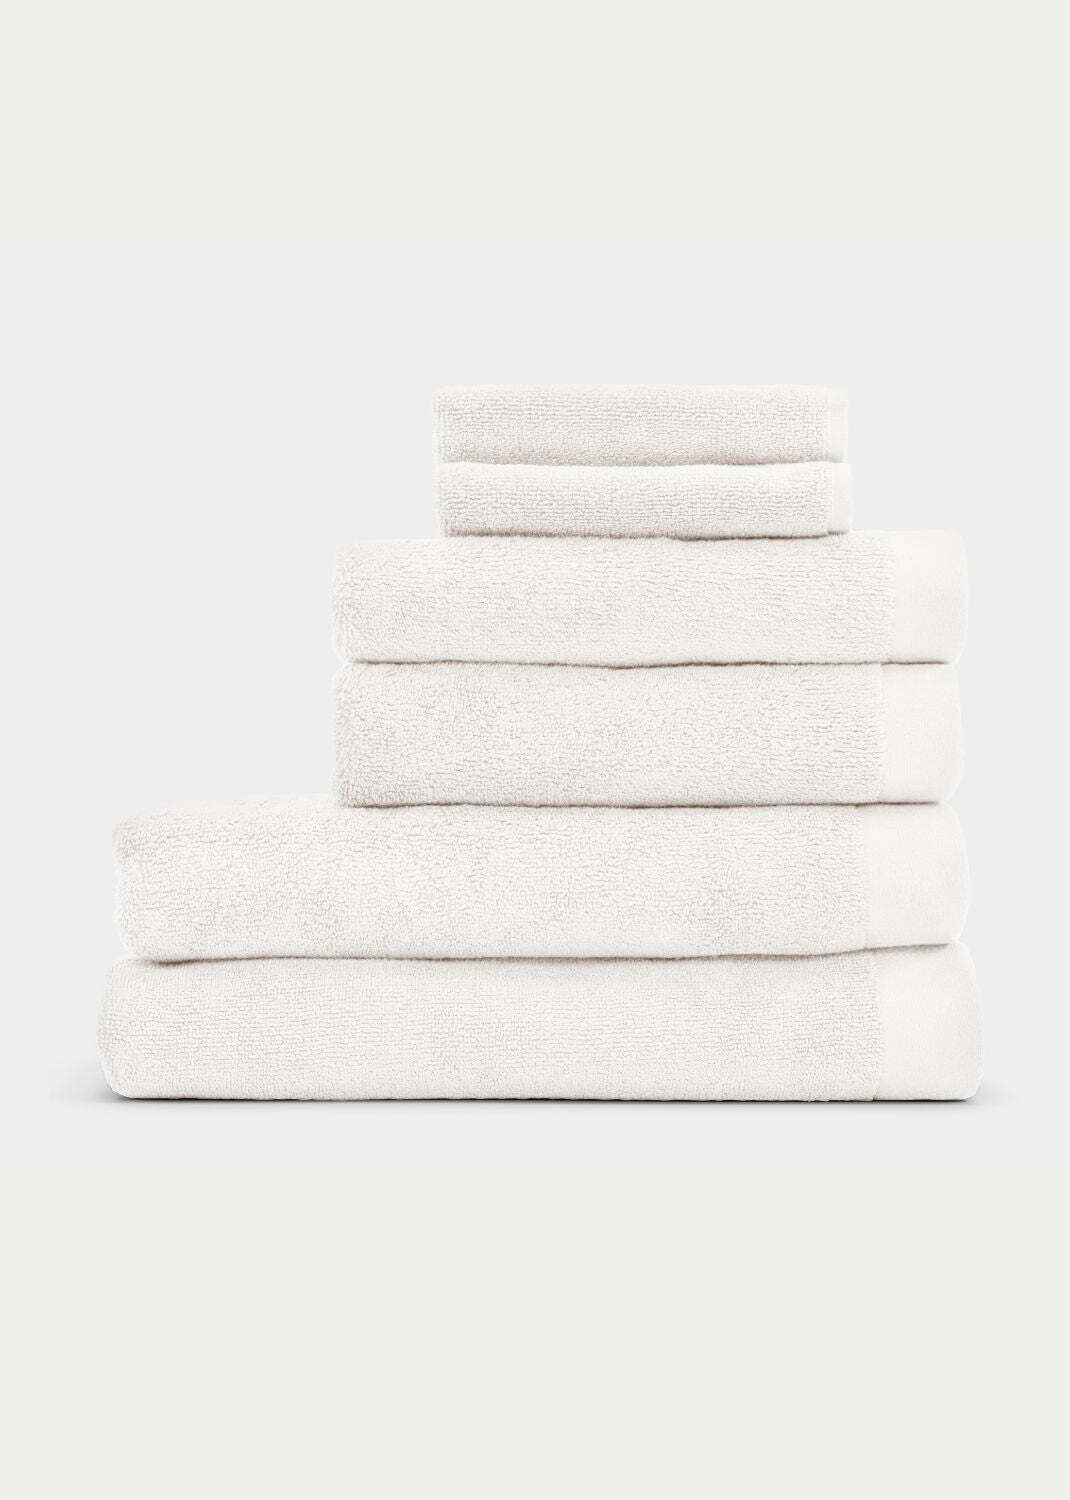 Handtuch Baumwolle Weiß 100 x 150 cm 0